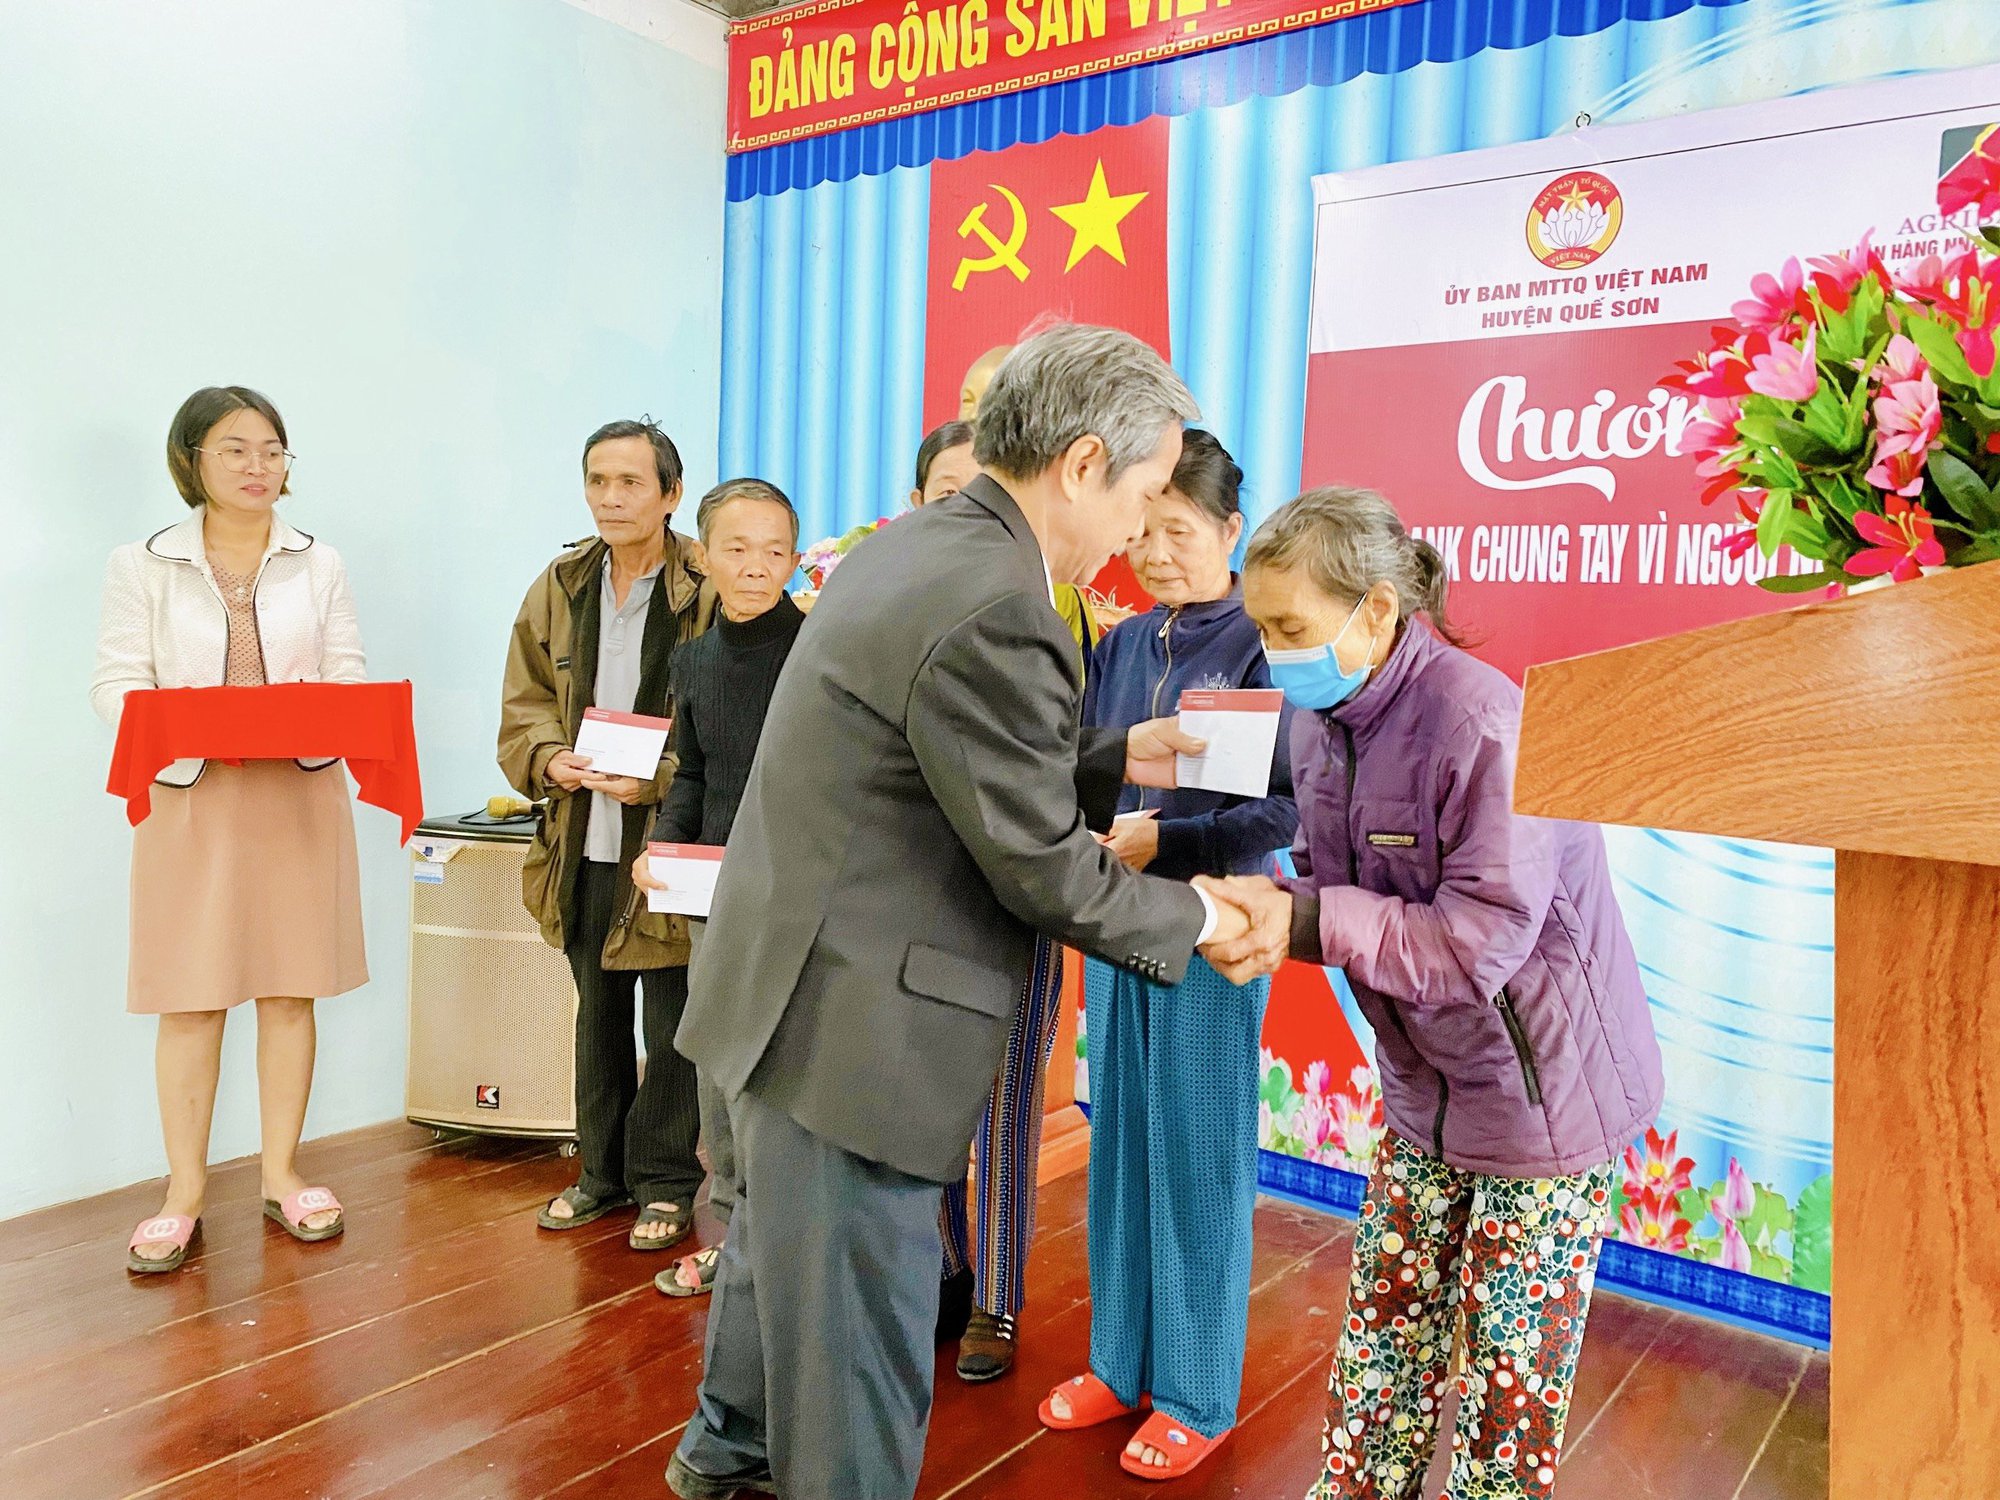 Agribank Chi nhánh tỉnh Quảng Nam tiếp sức cho người nghèo đón Tết - Ảnh 2.